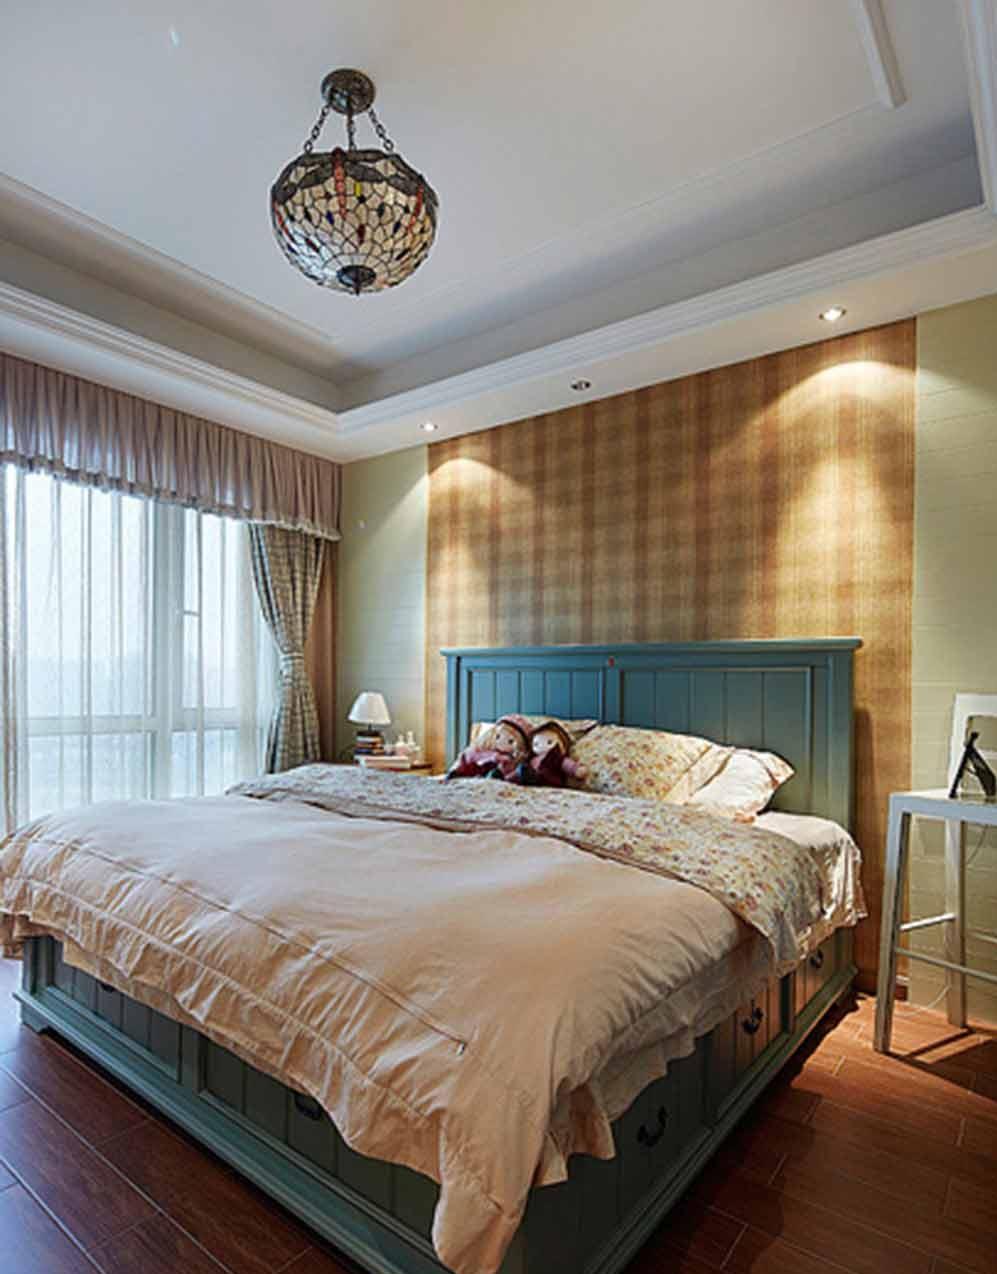 卧室墙面的颜色并不单一，以黄色条纹墙纸和浅绿色墙纸的结合，设计师大胆表达创新、清新脱俗的设计理念。